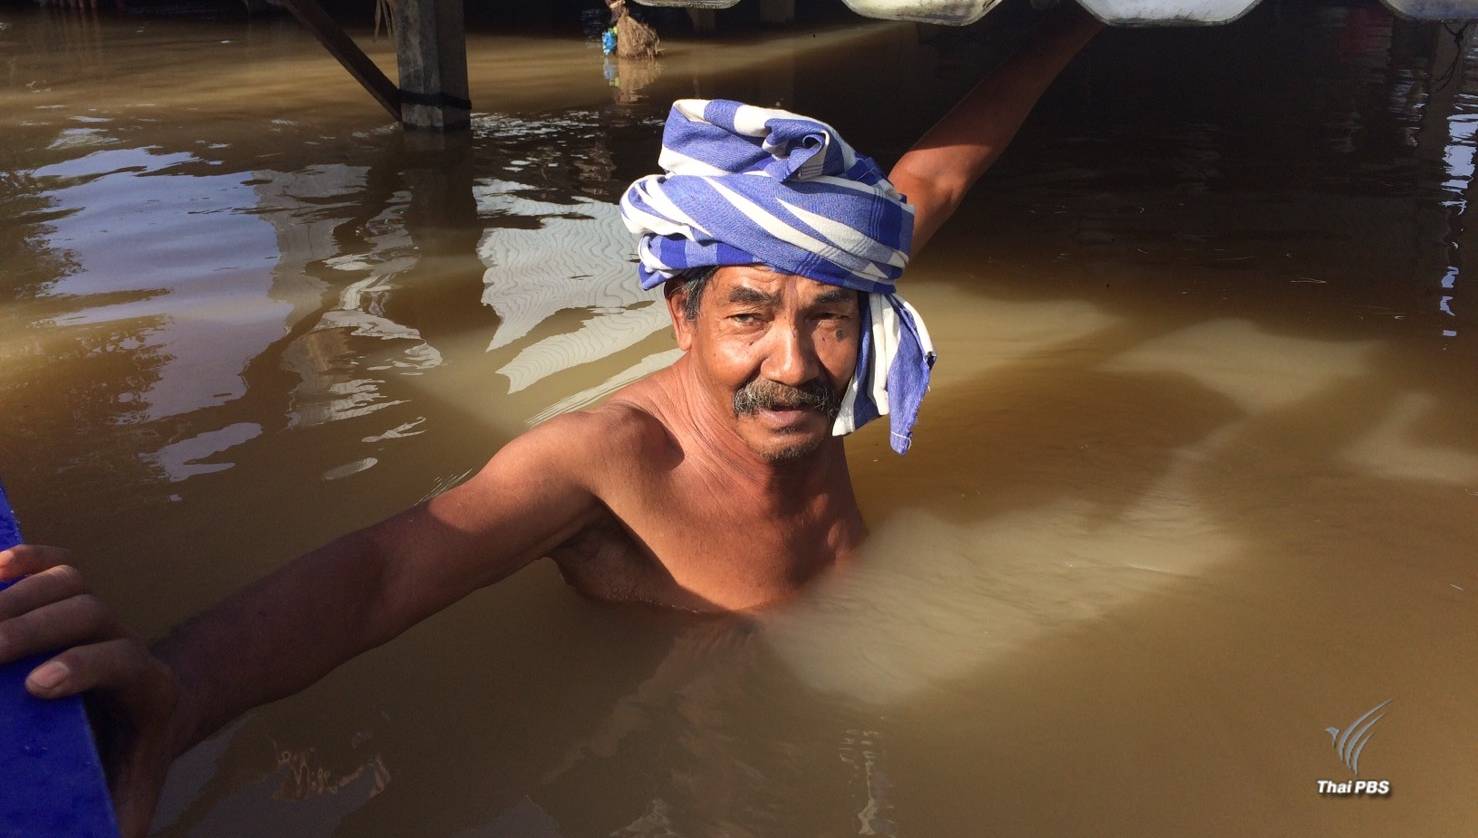 ชุมชนปะกาฮารัง จ.ปัตตานี น้ำท่วมกว่า 2 ม. วอนหน่วยงานเกี่ยวข้องช่วยเหลือ 